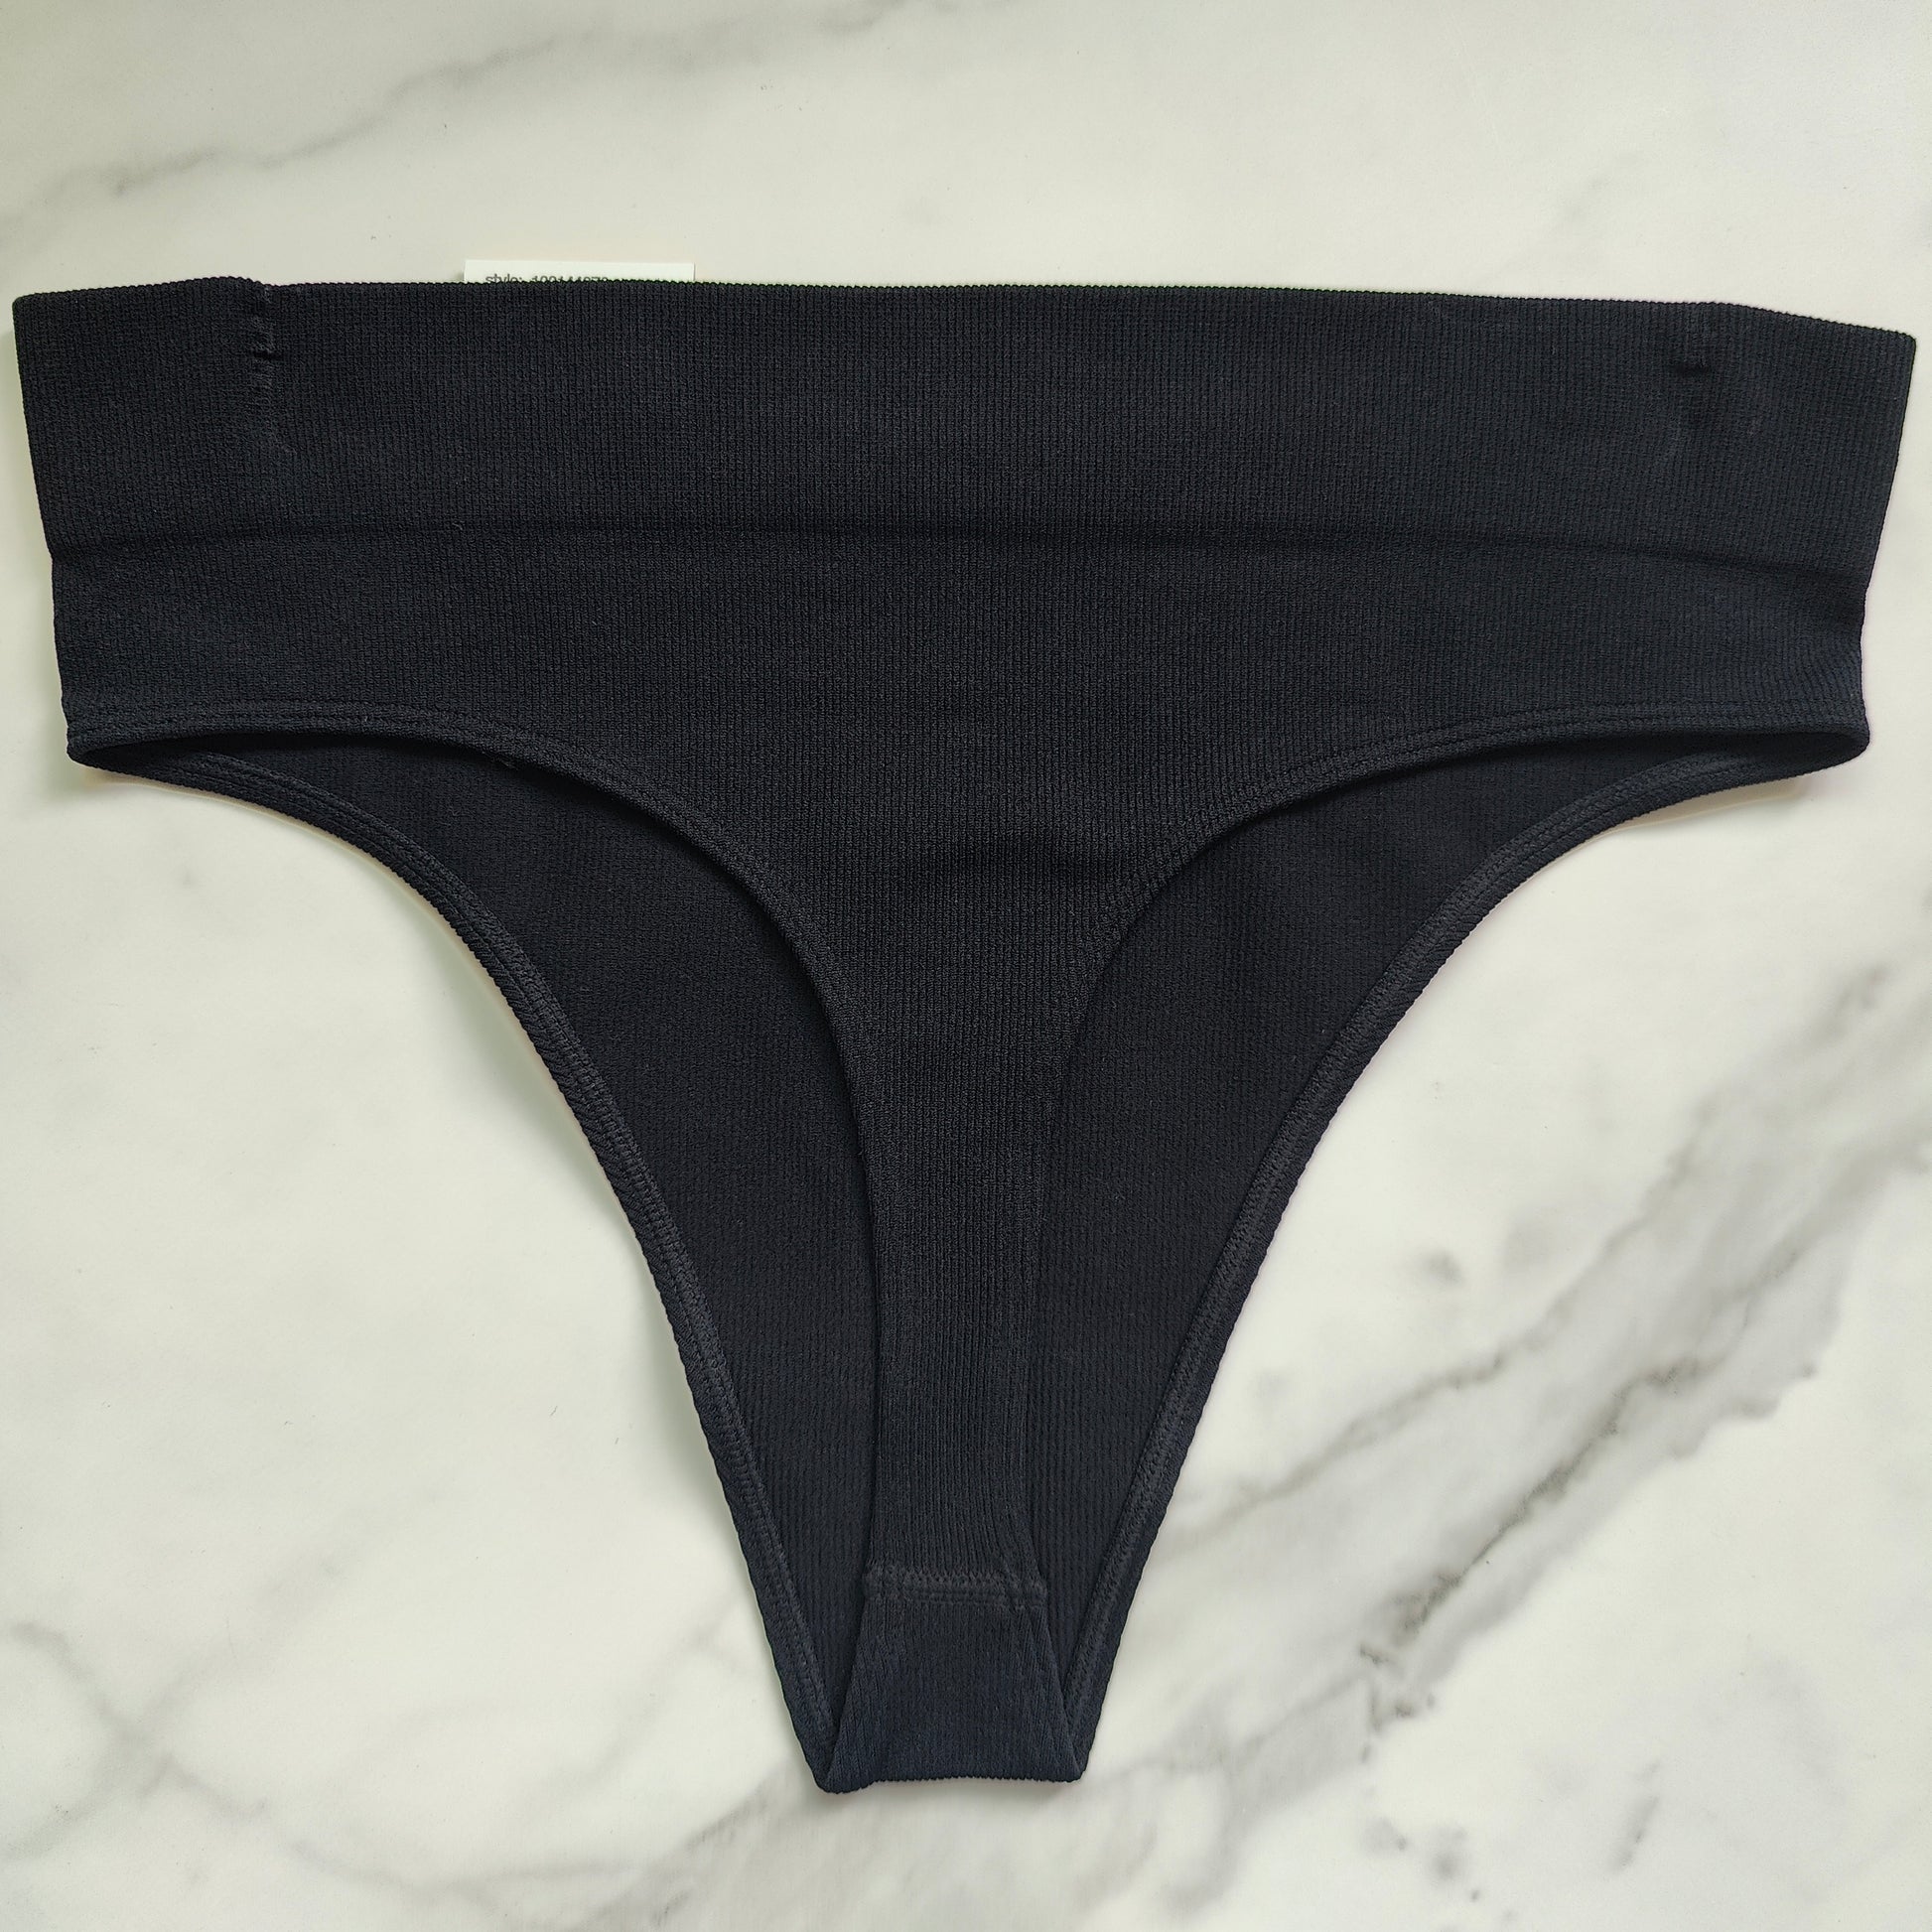 Soma Cotton Modal Thong Underwear, Black, size L